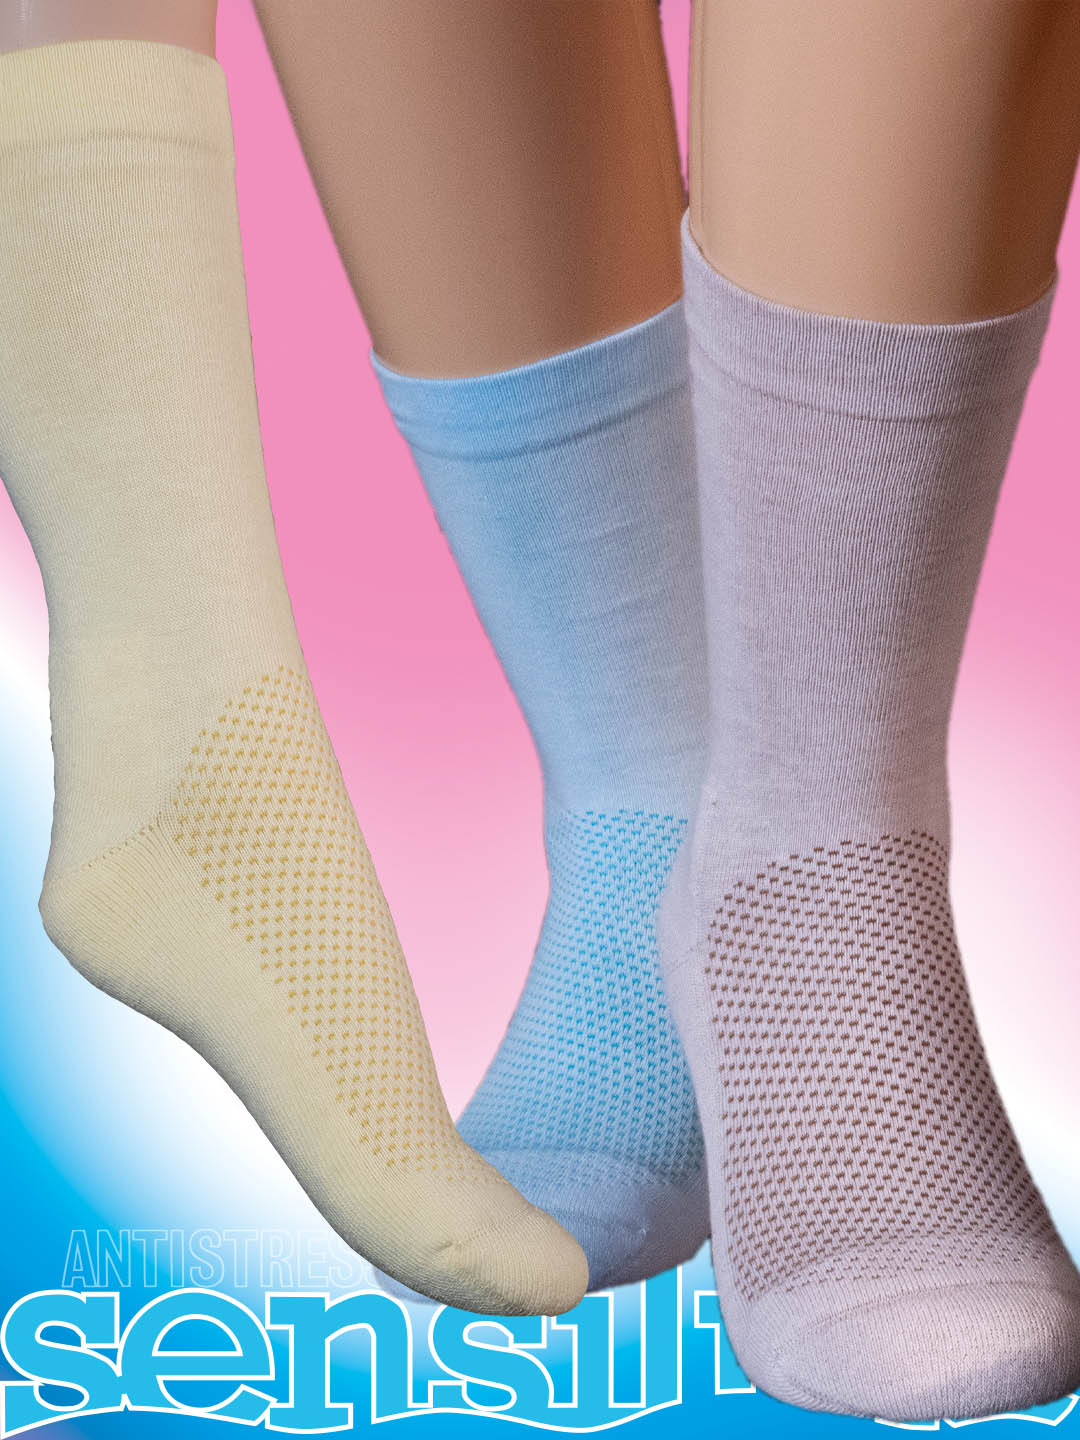 elly antistress sensiline socks padded colored for diabetic feet